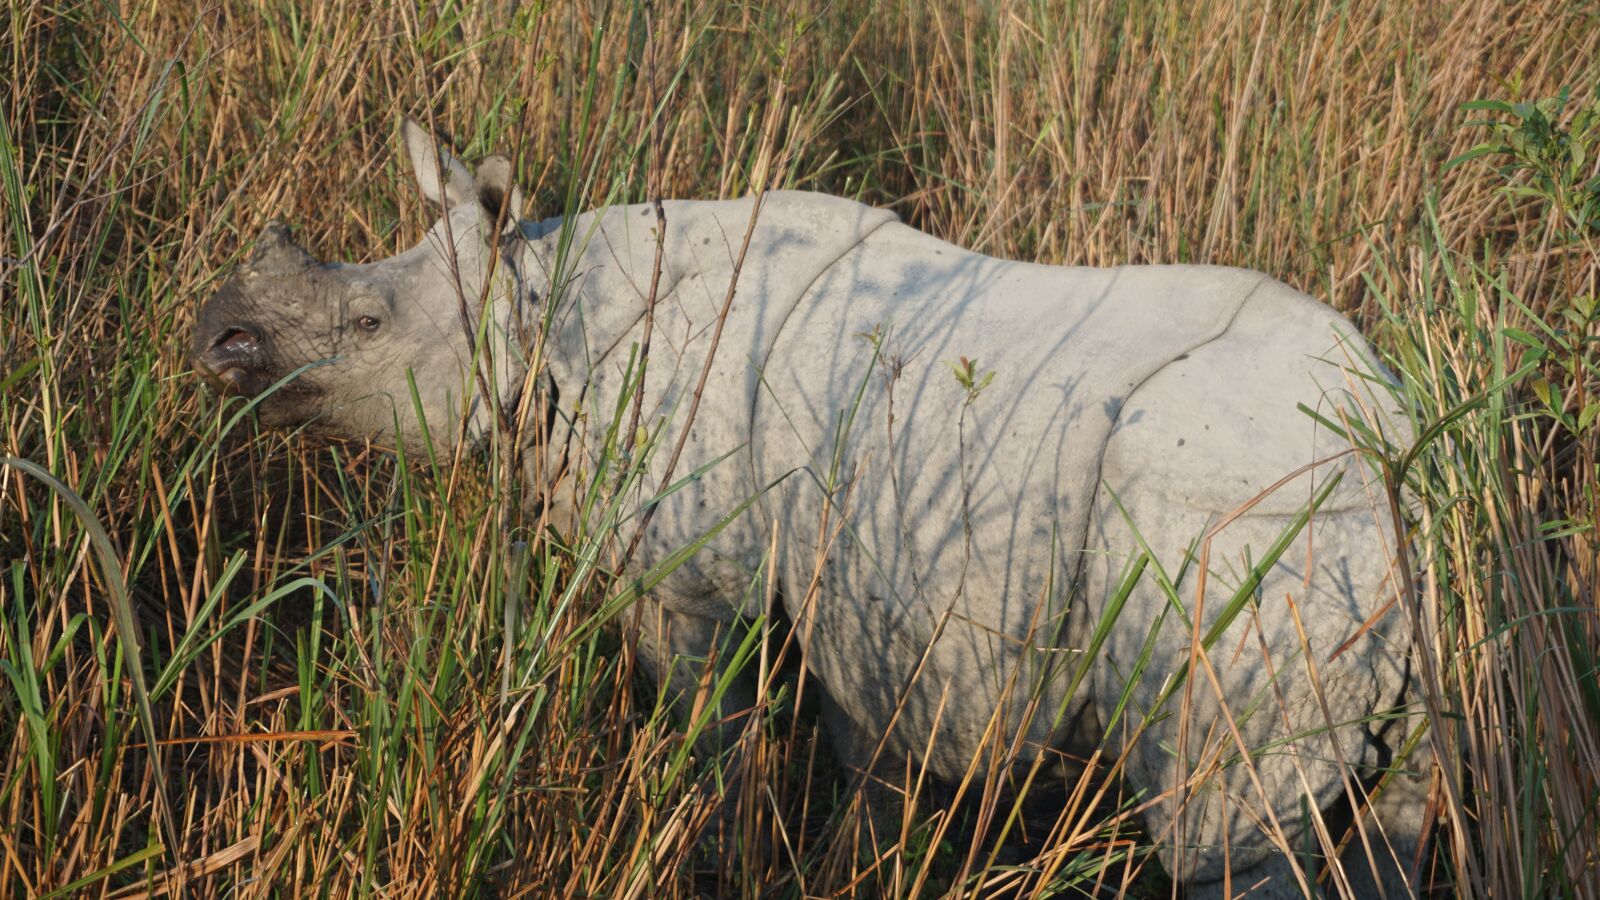 Sony a6000 sample photo. Rhino, rhinoceros, india photography